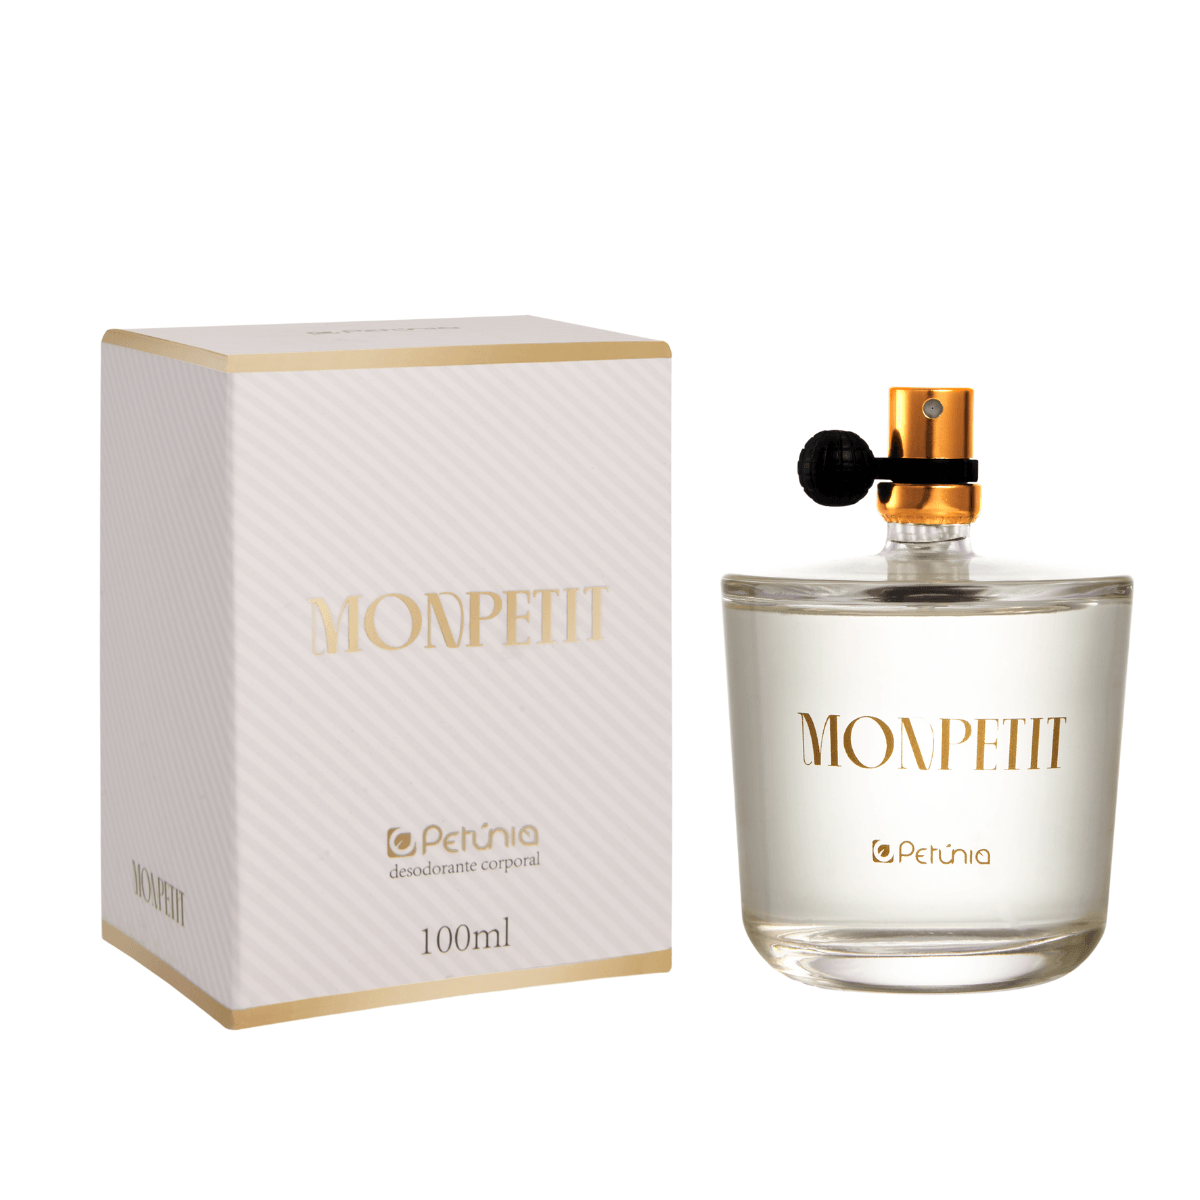 Perfume--Feminino-Eau-De-Toilette-Monpetit-100Ml---Petunia-YEN-1.42013.0